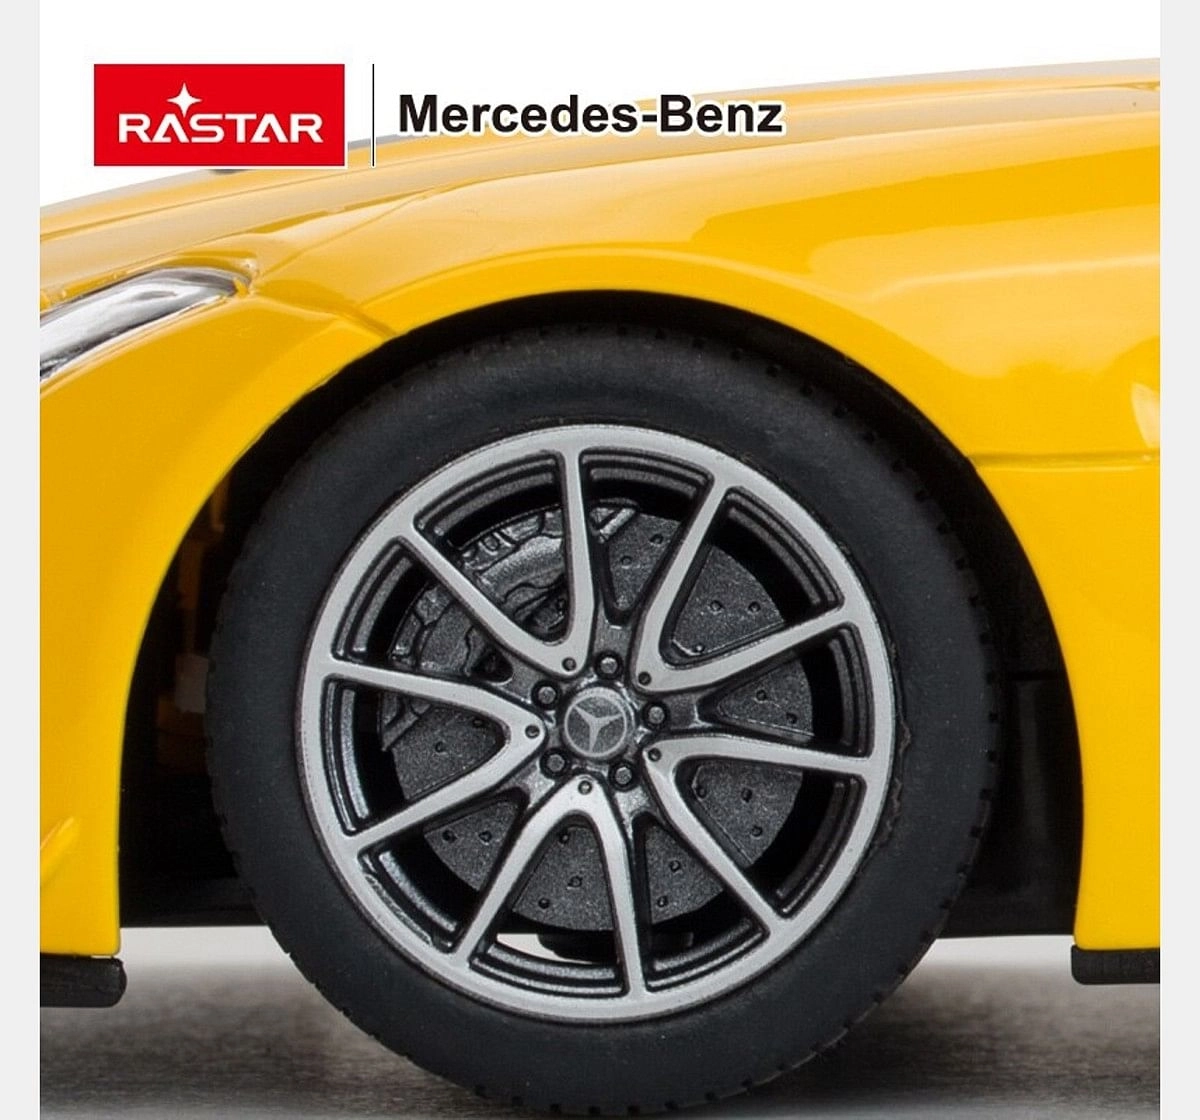 Rastar 1:24 Mercedes Benz G63 Remote Control Car, 2Y+ (Multicolor)